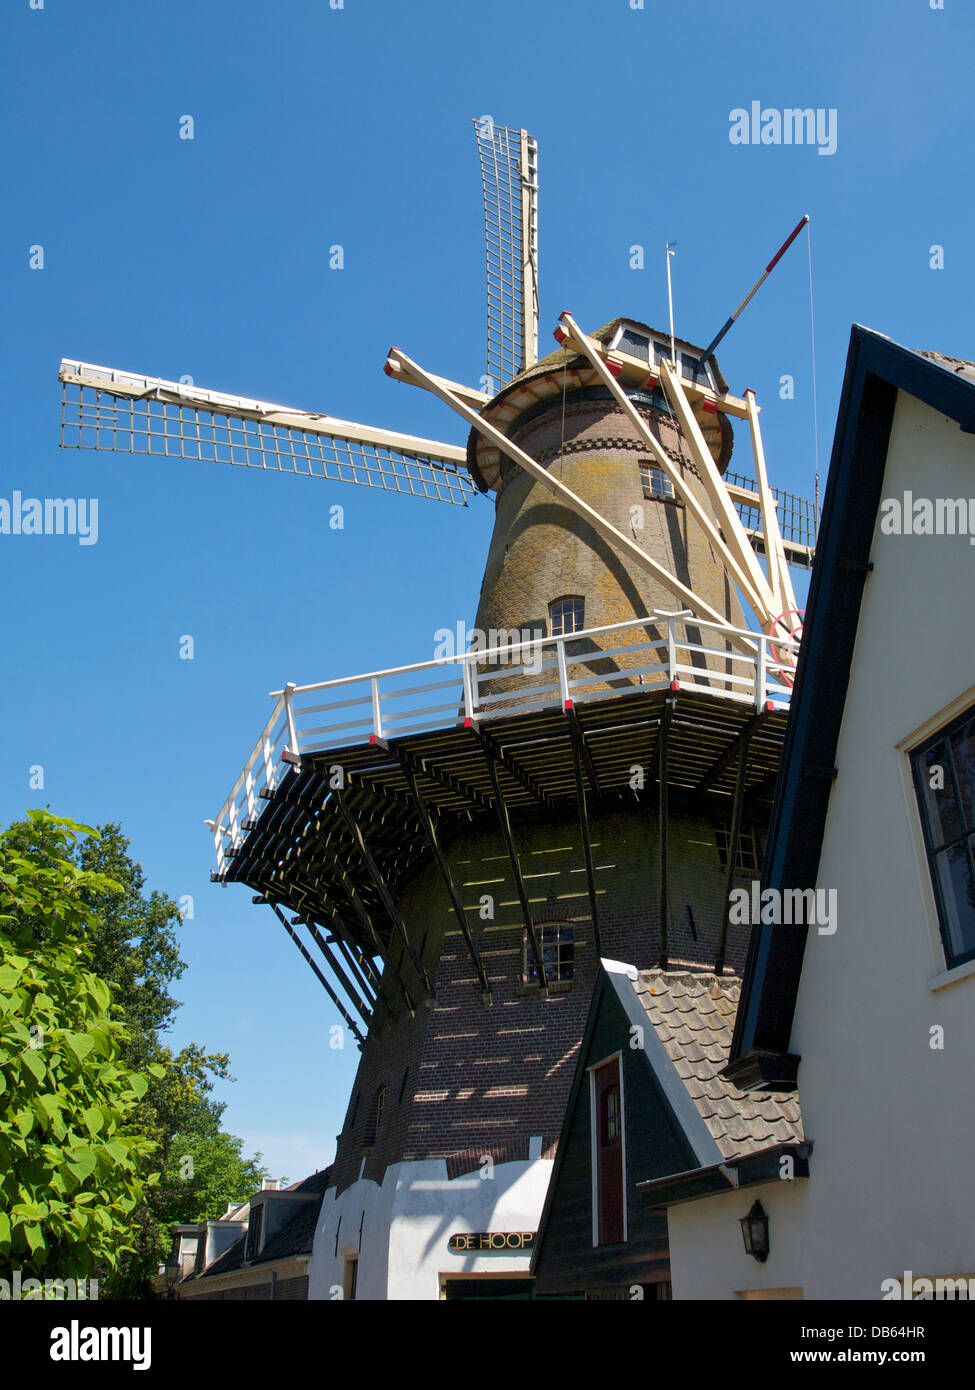 Windmühle de Hoop in Loenen Aan de Vecht, Utrecht, Niederlande. Aus dem Jahr 1903, nachdem sein Vorgänger durch einen Brand zerstört wurde. Stockfoto